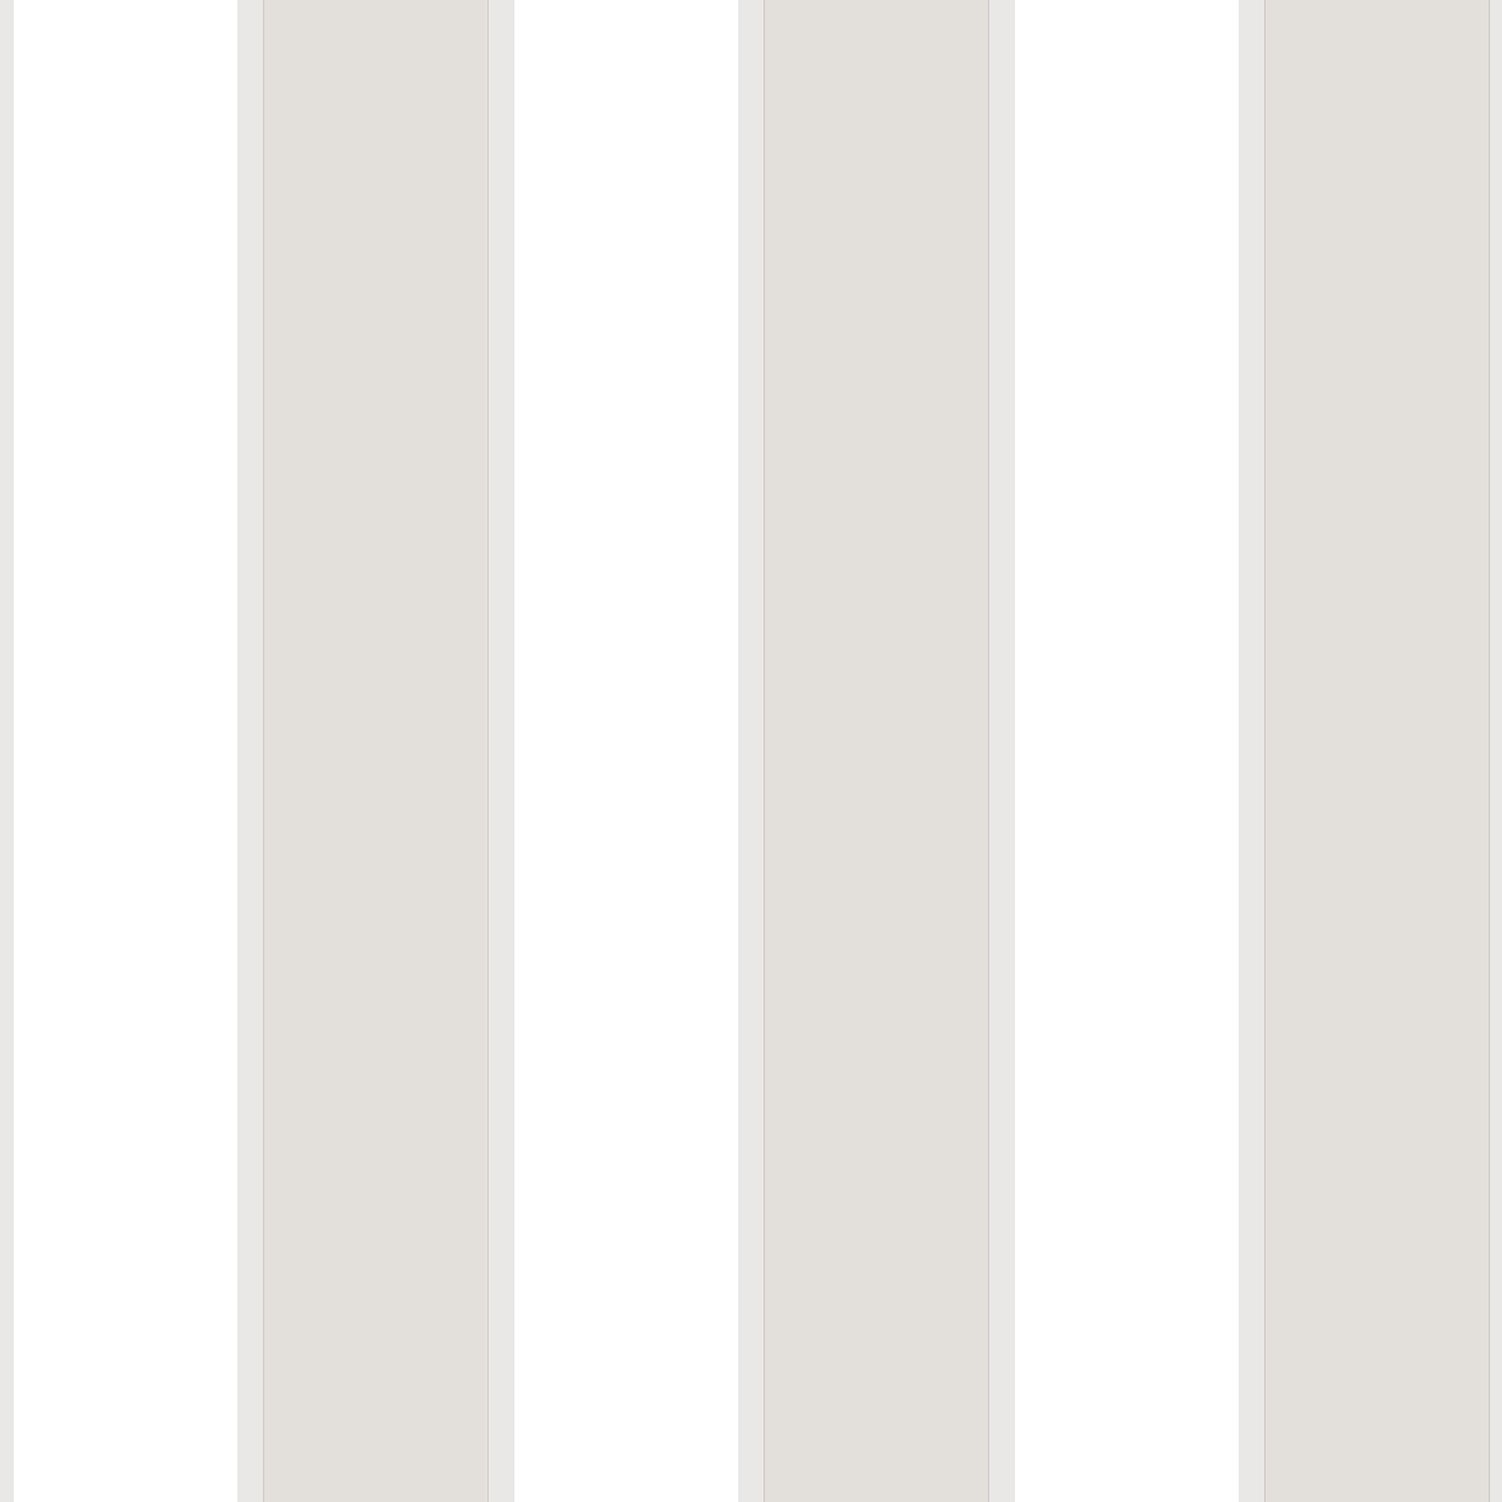 Ταπετσαρία Τοίχου Ανοιχτή Γκρι-Λευκή Ρίγα RK22060D 75,00€